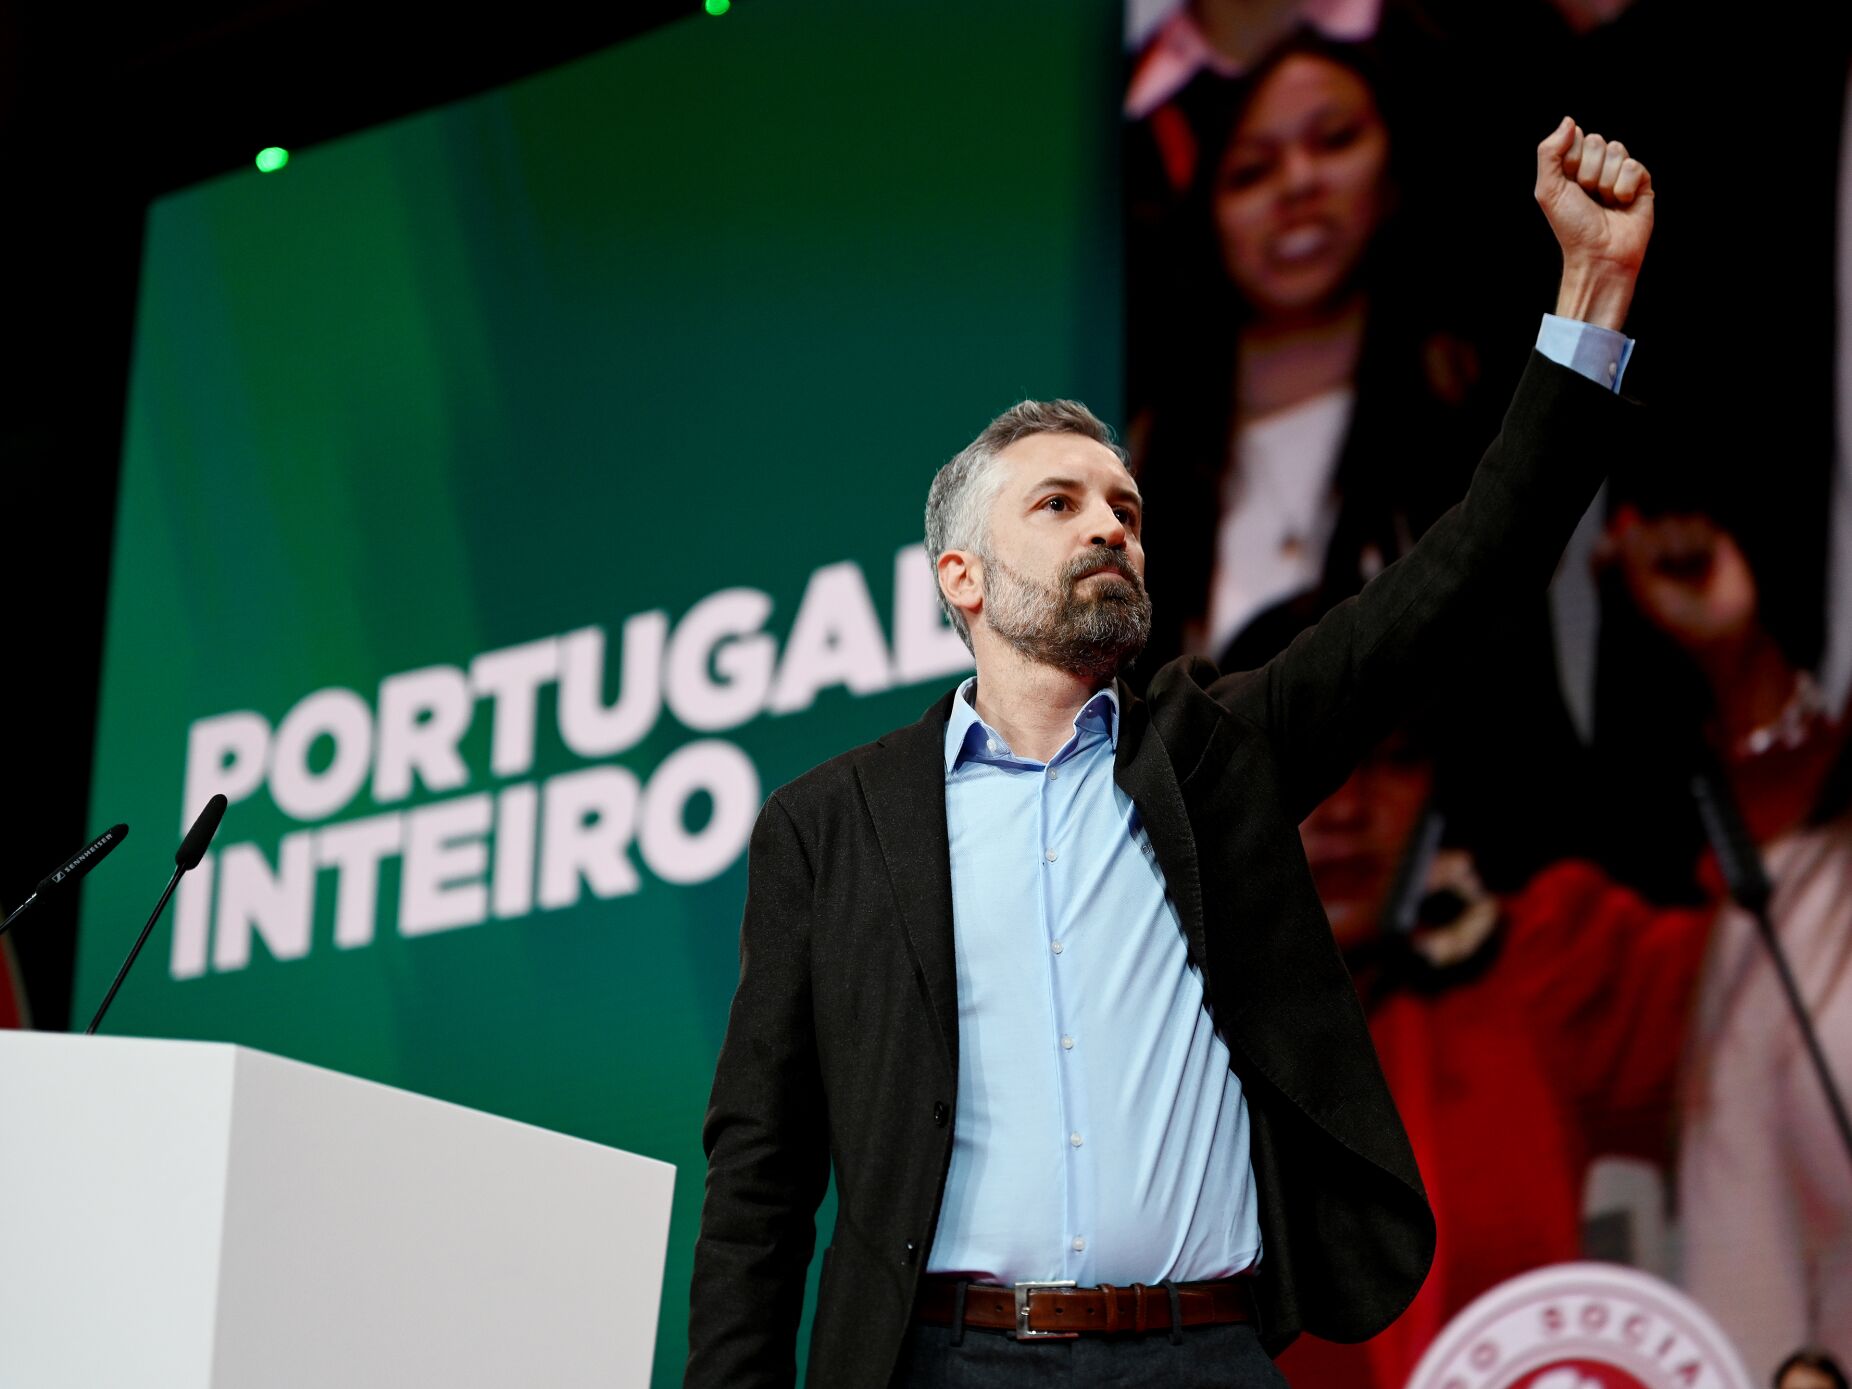 Pedro Nuno promete humildade, corrigir erros e nunca apontar o dedo a quem protesta